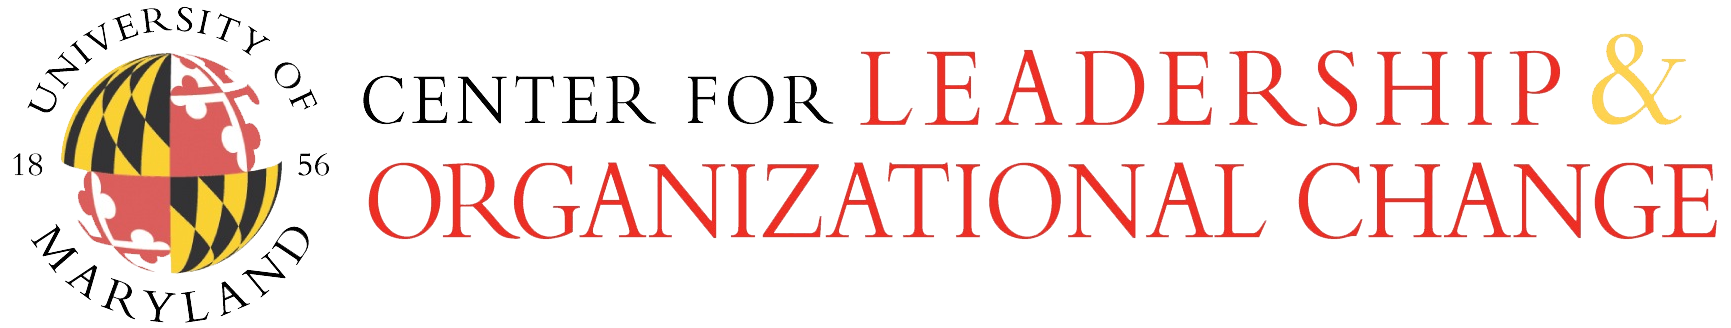 UMD Center for Leadership & Organizational Change footer logo